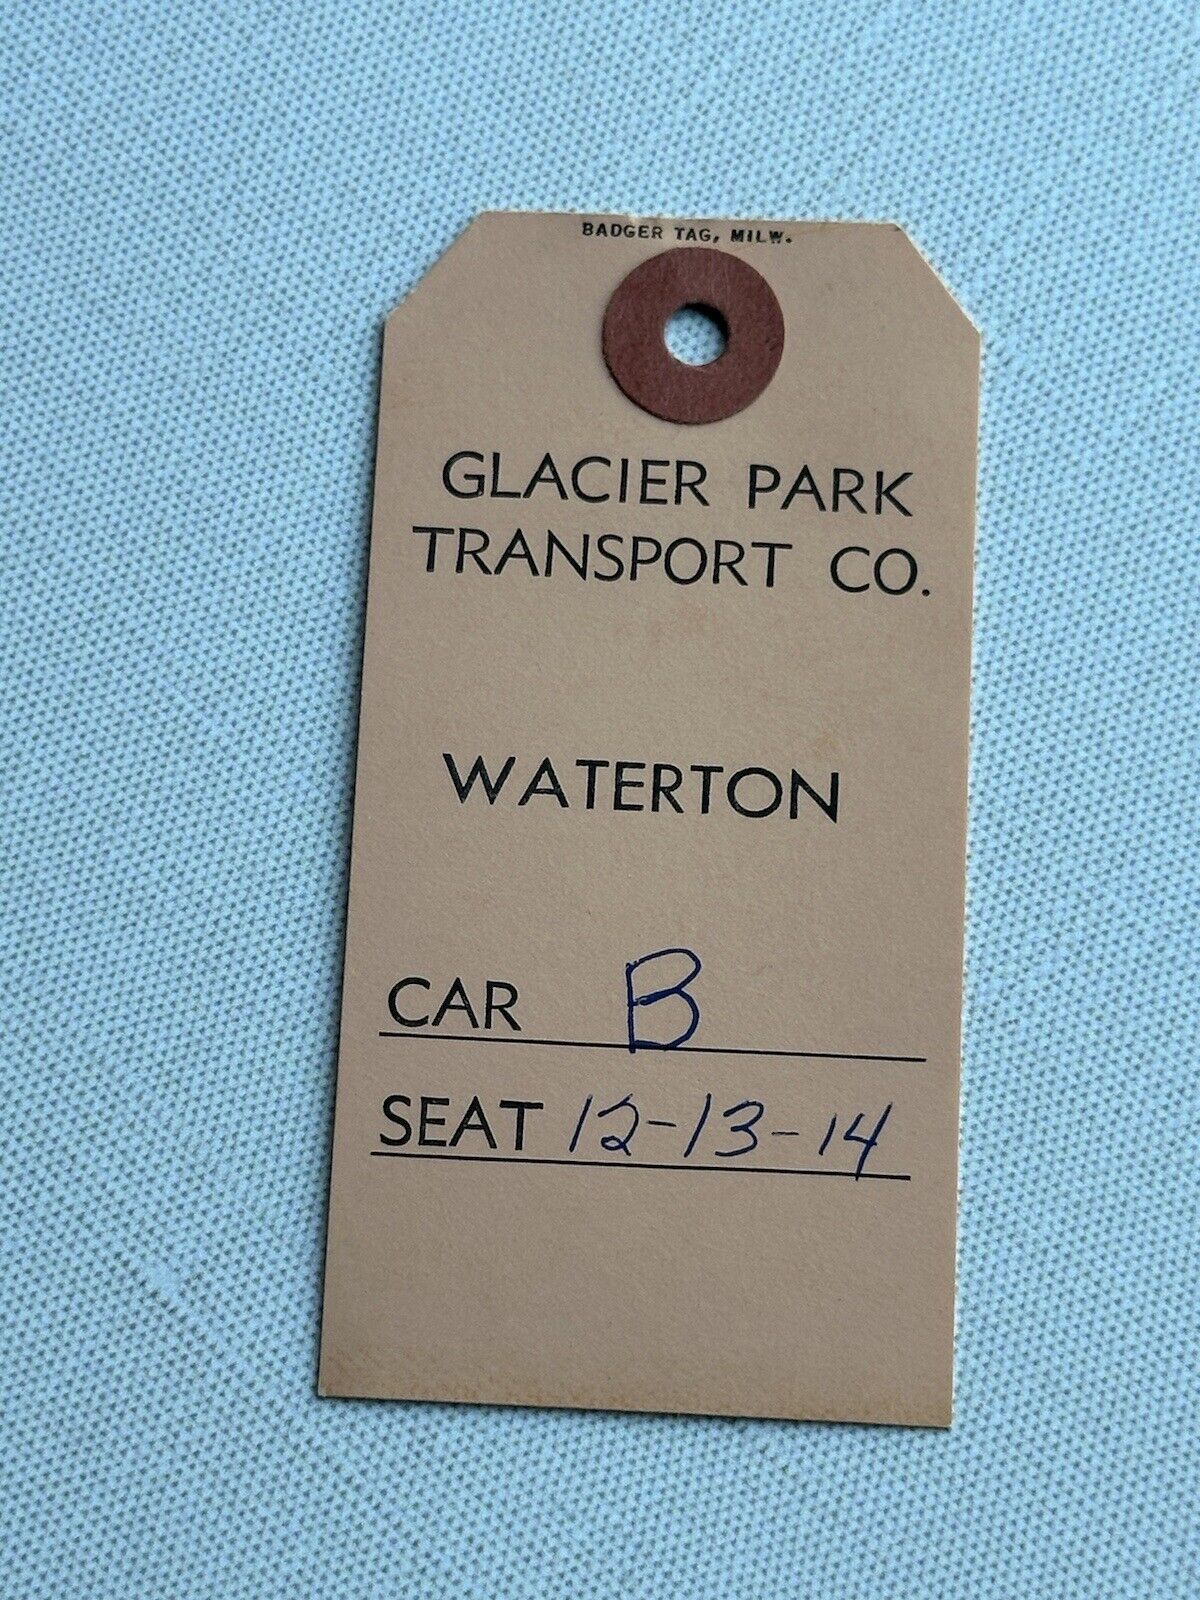 1961 GLACIER  PARK TRANSPORT CO BADGE  WATERTON TICKET VINTAGE